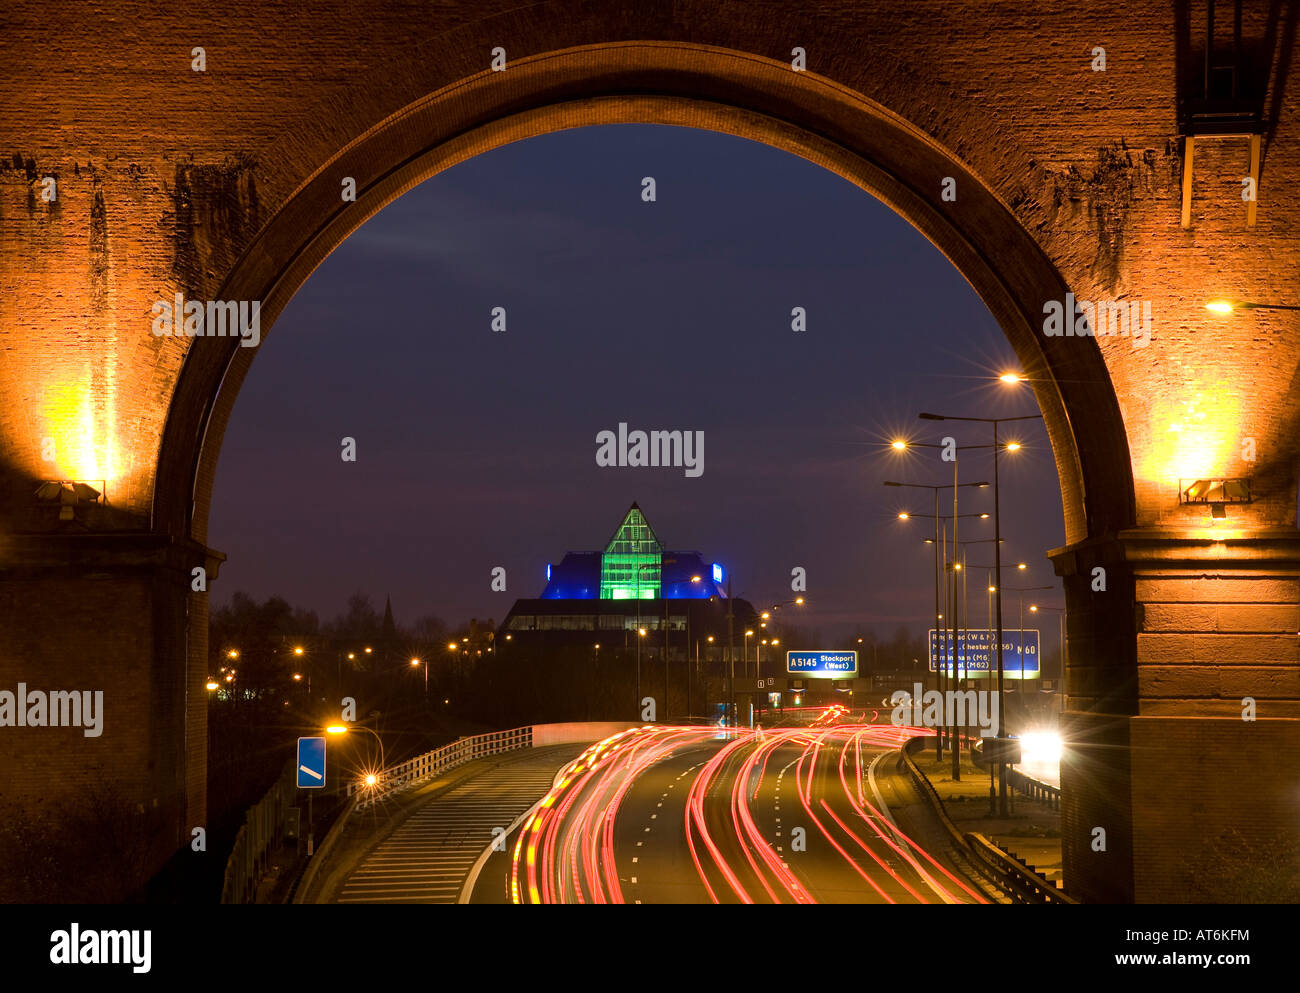 M60 Autobahn, Stockport Pyramide und Viadukt in der Nacht. Stockport, grösseres Manchester, Vereinigtes Königreich. Stockfoto